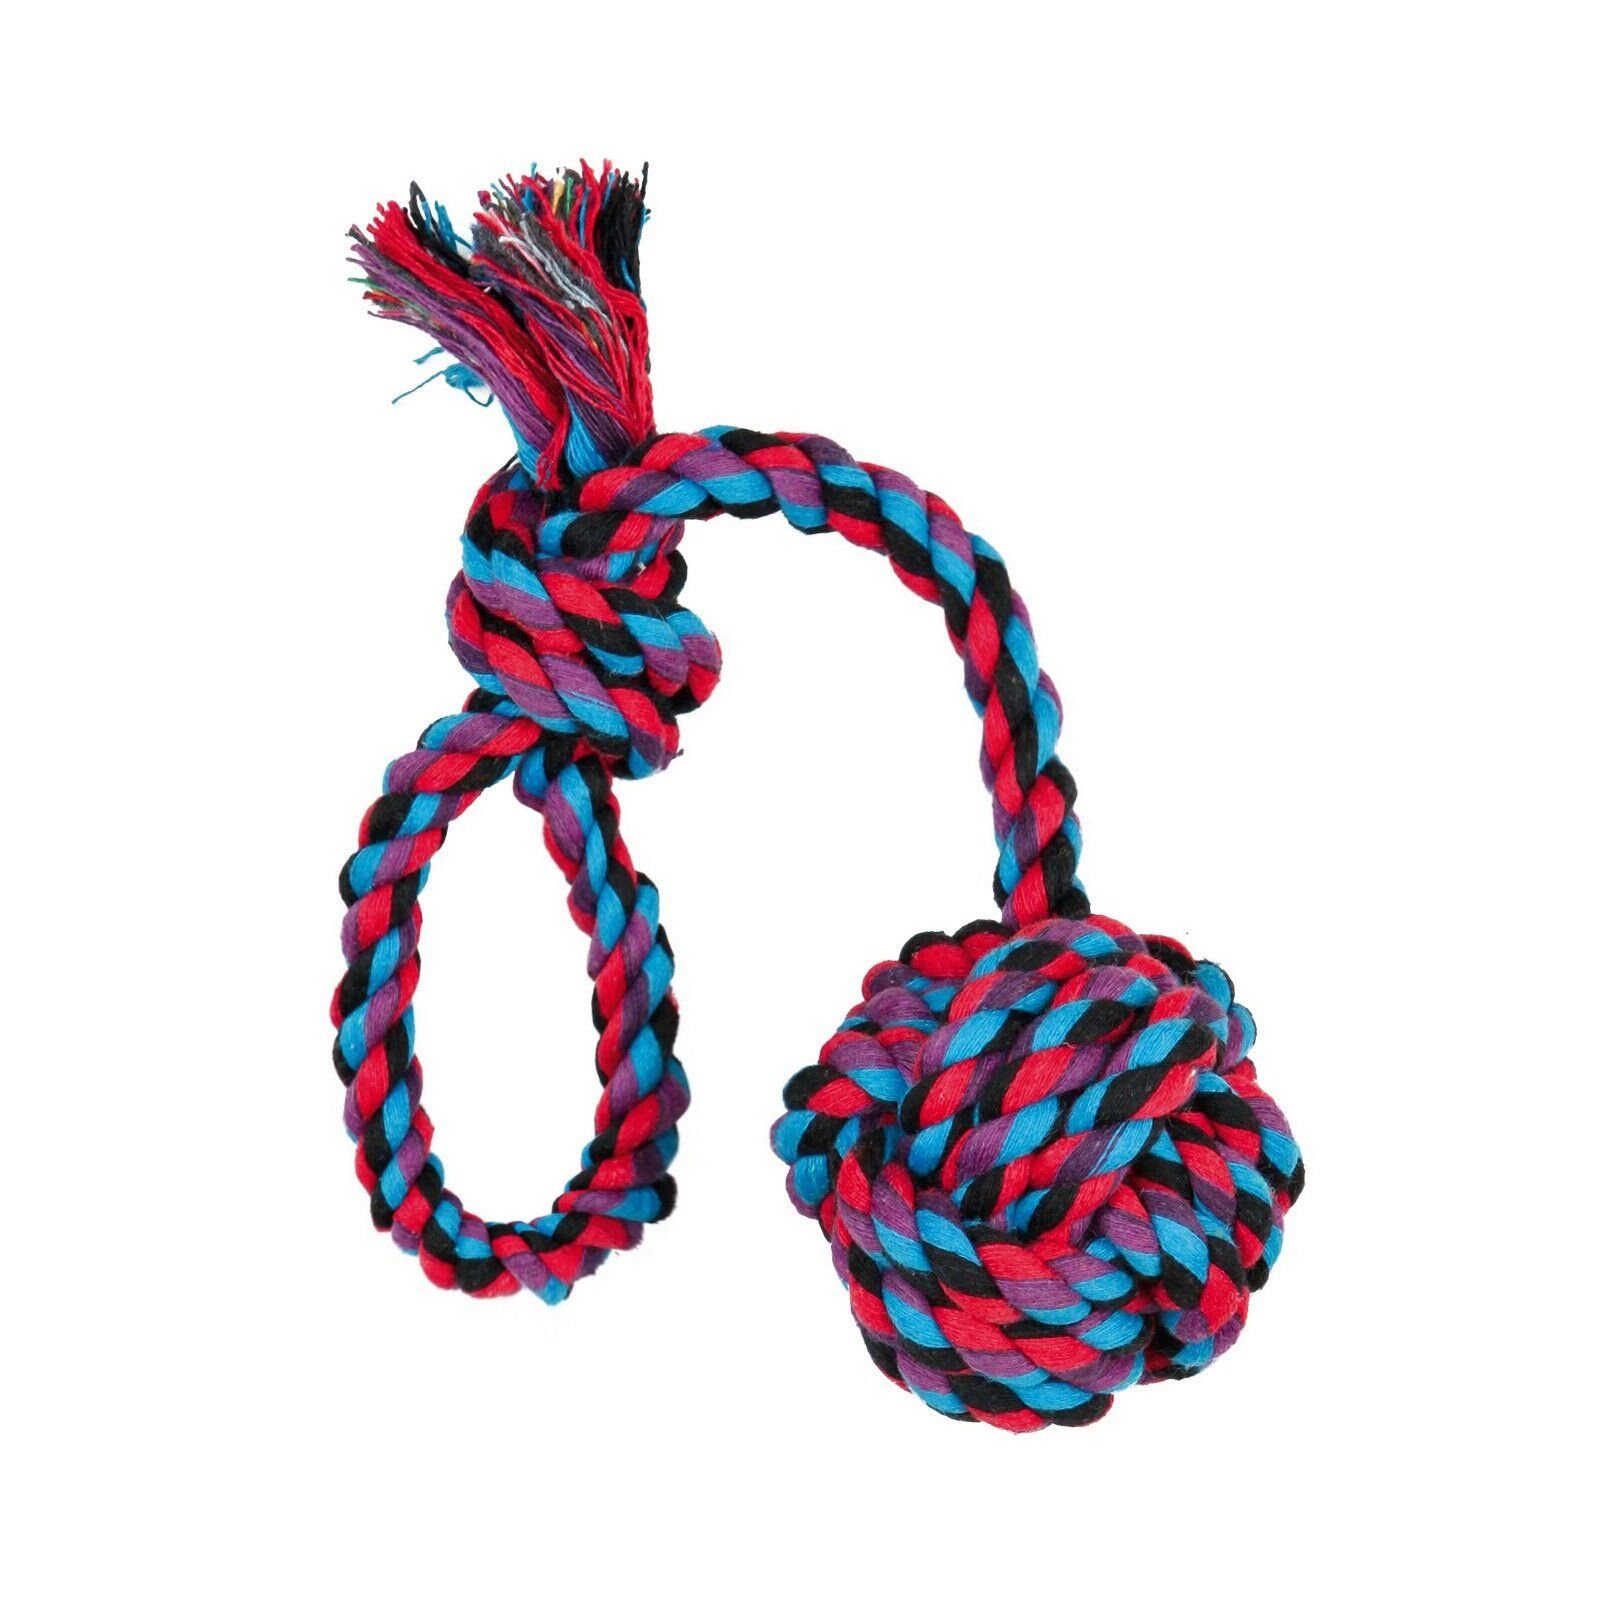 Игрушка для собак Trixie Мяч плетёный с ручкой 30 см, d=5,5 см (текстиль, цвета в ассортименте)